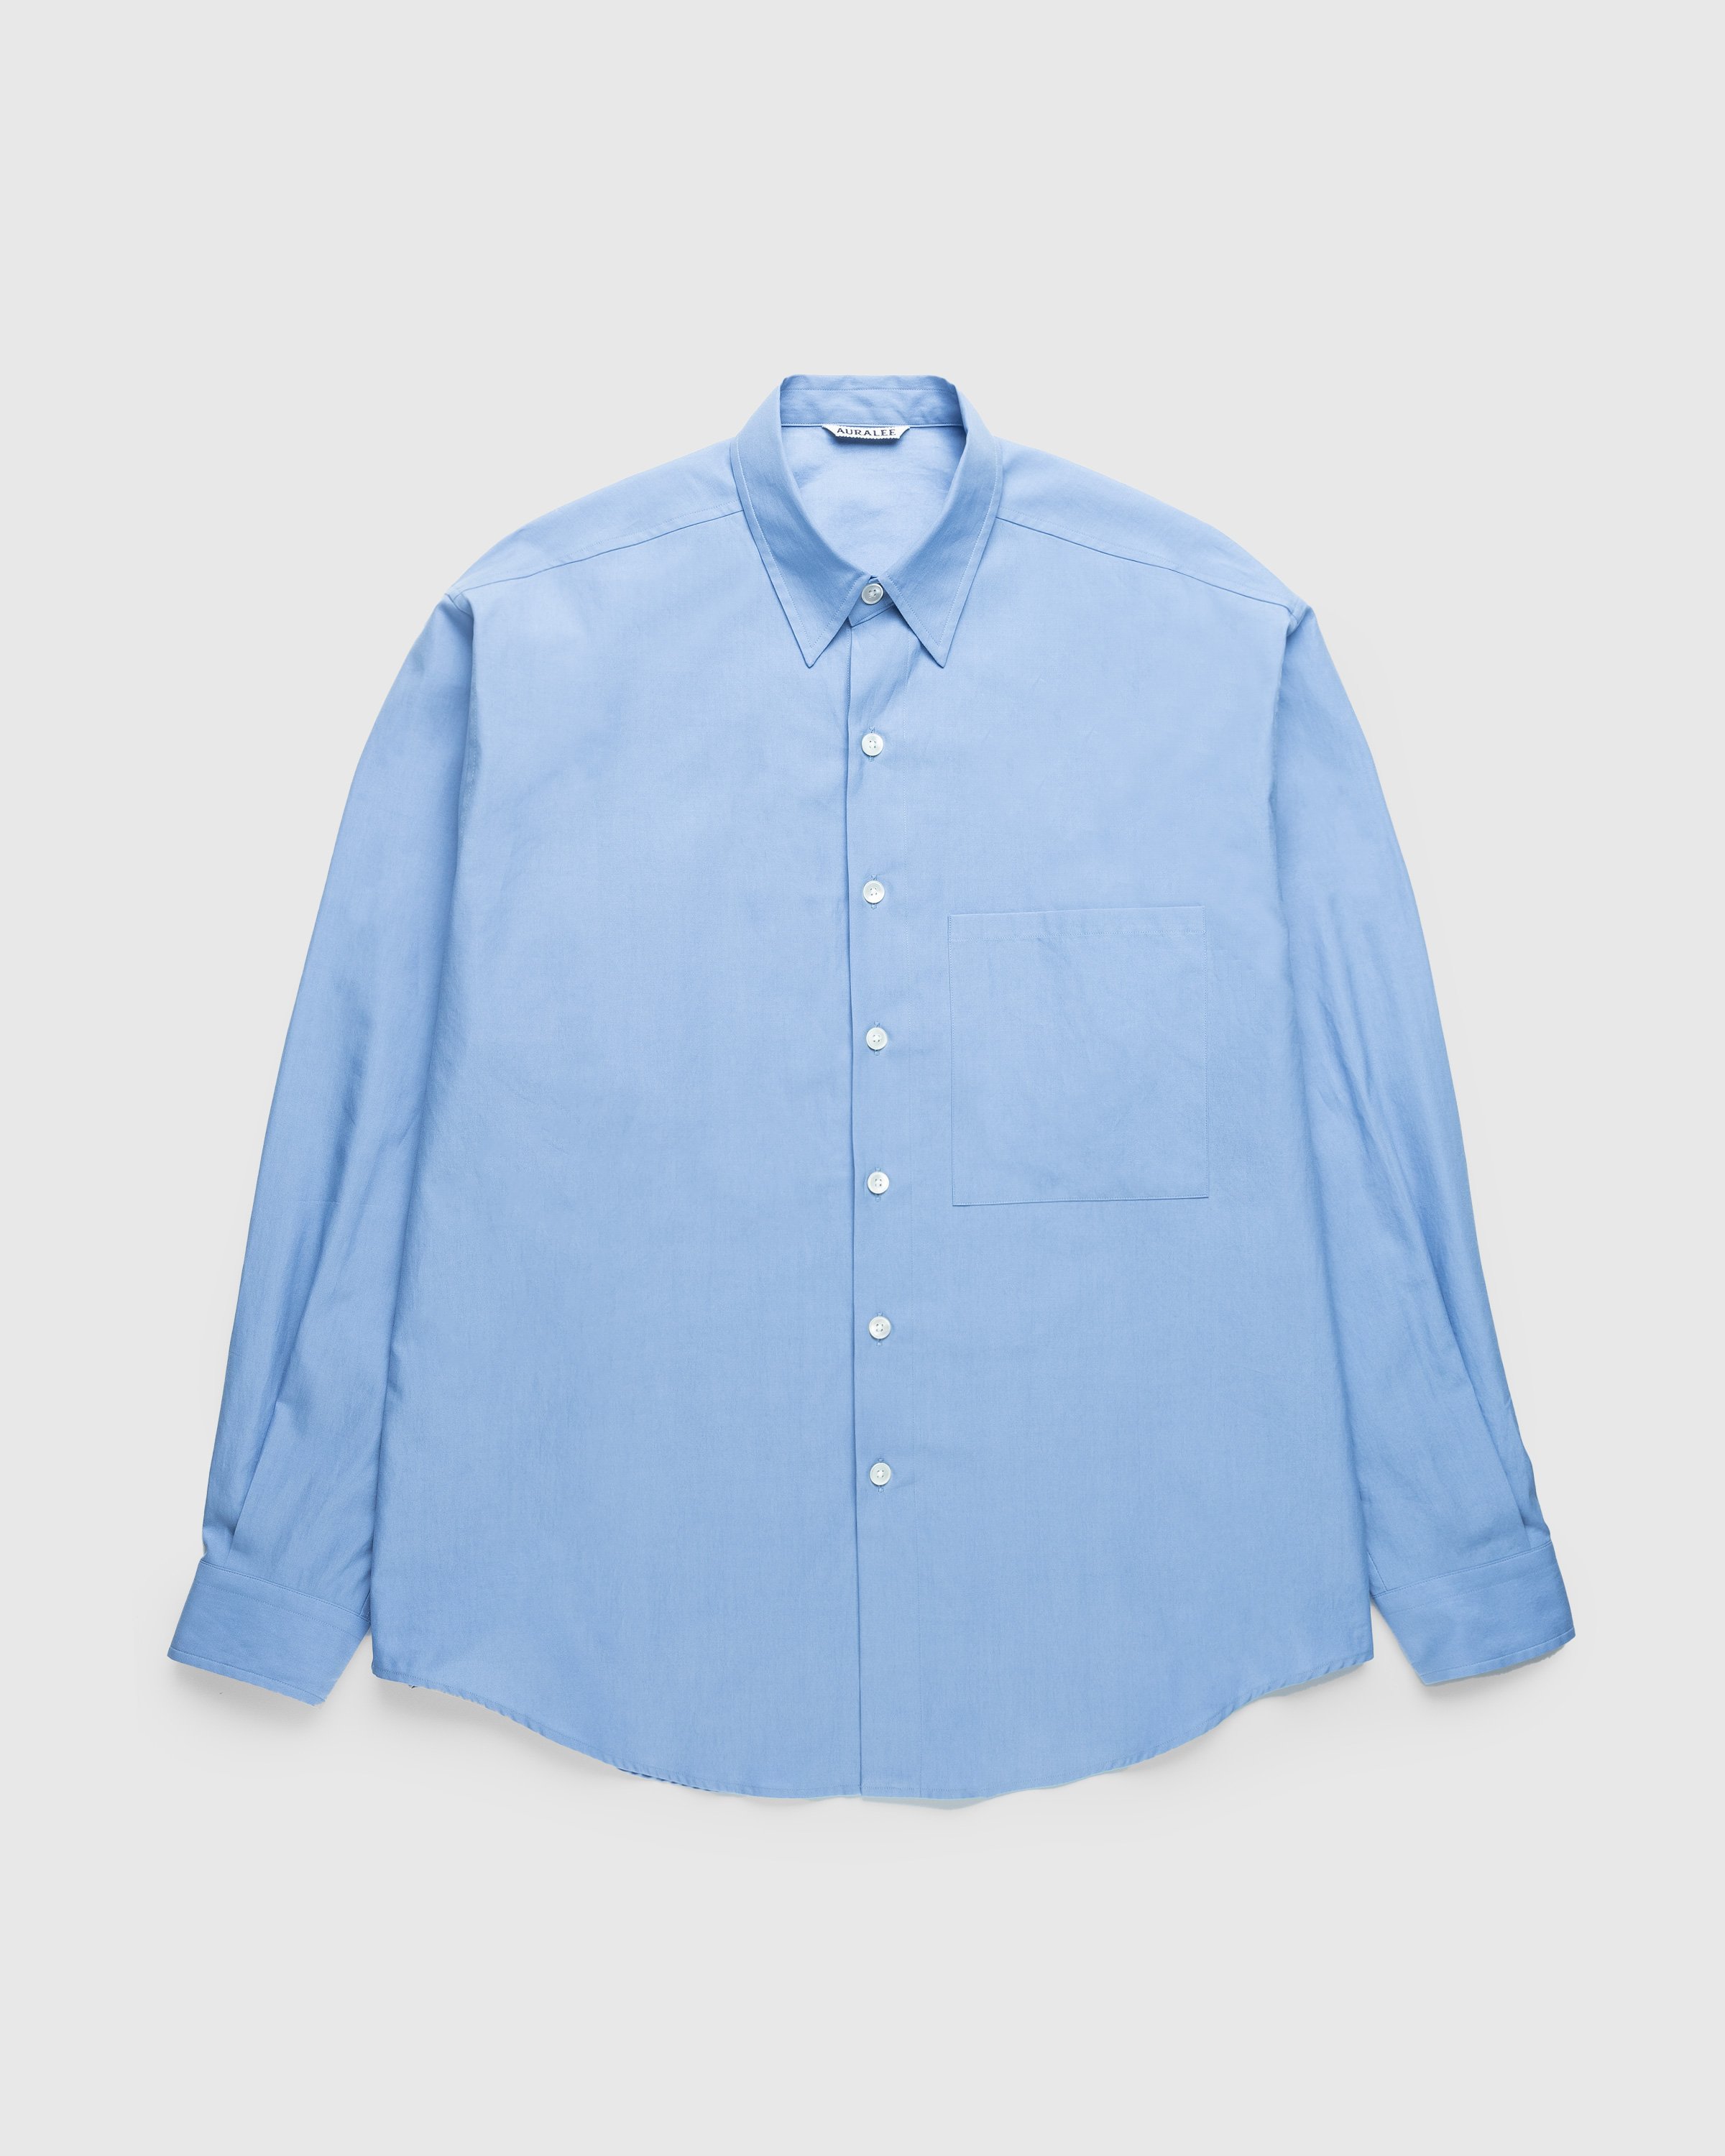 Auralee - Washed Finks Twill Big Shirt Blue - Clothing - Blue - Image 1